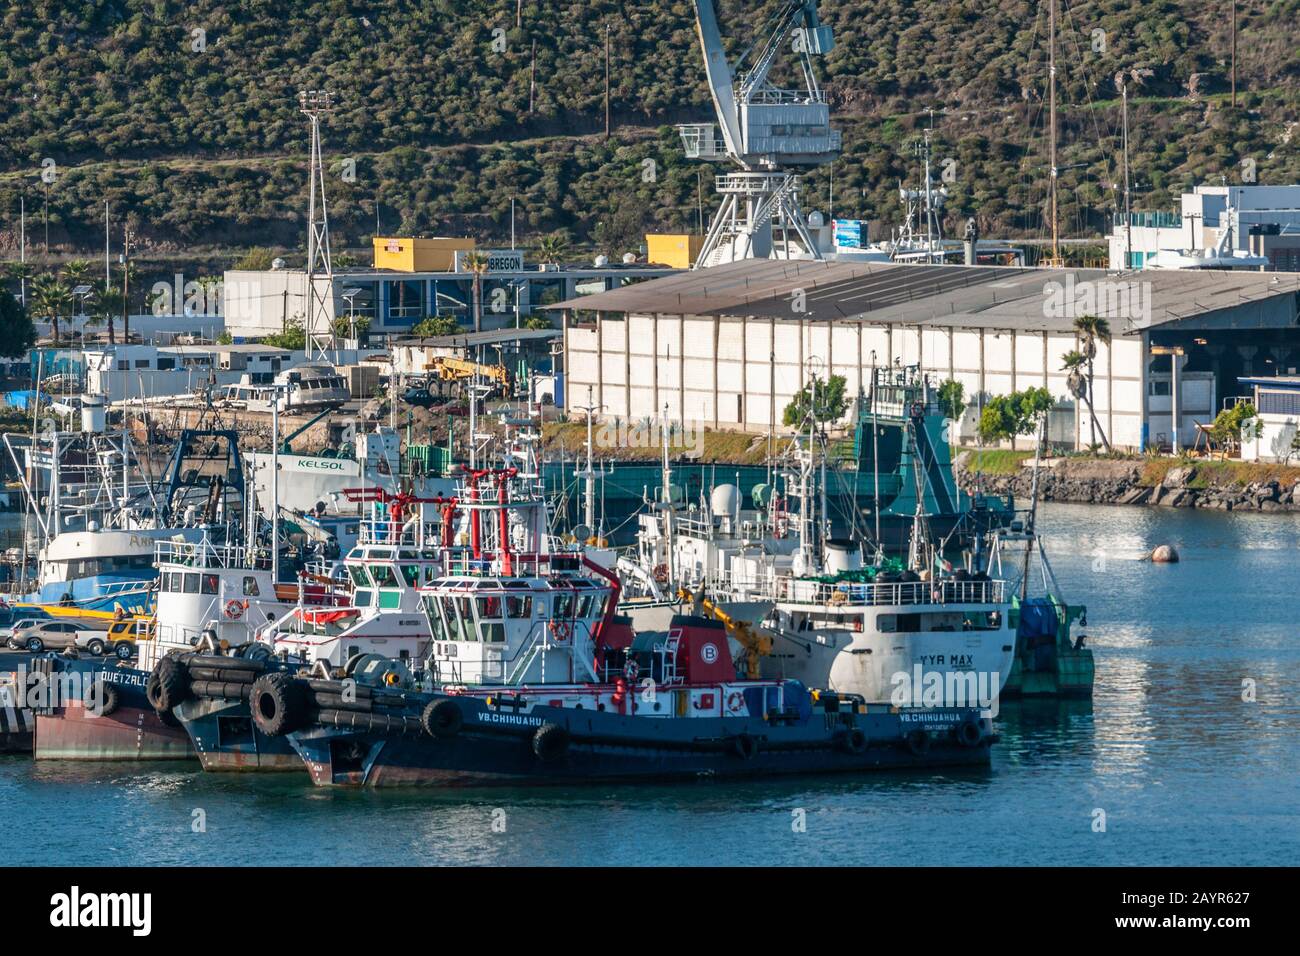 Ensenada, Mexique - 17 janvier 2012: Fermeture de quelques bateaux de pêche amarrés côte à côte au port. Banque D'Images